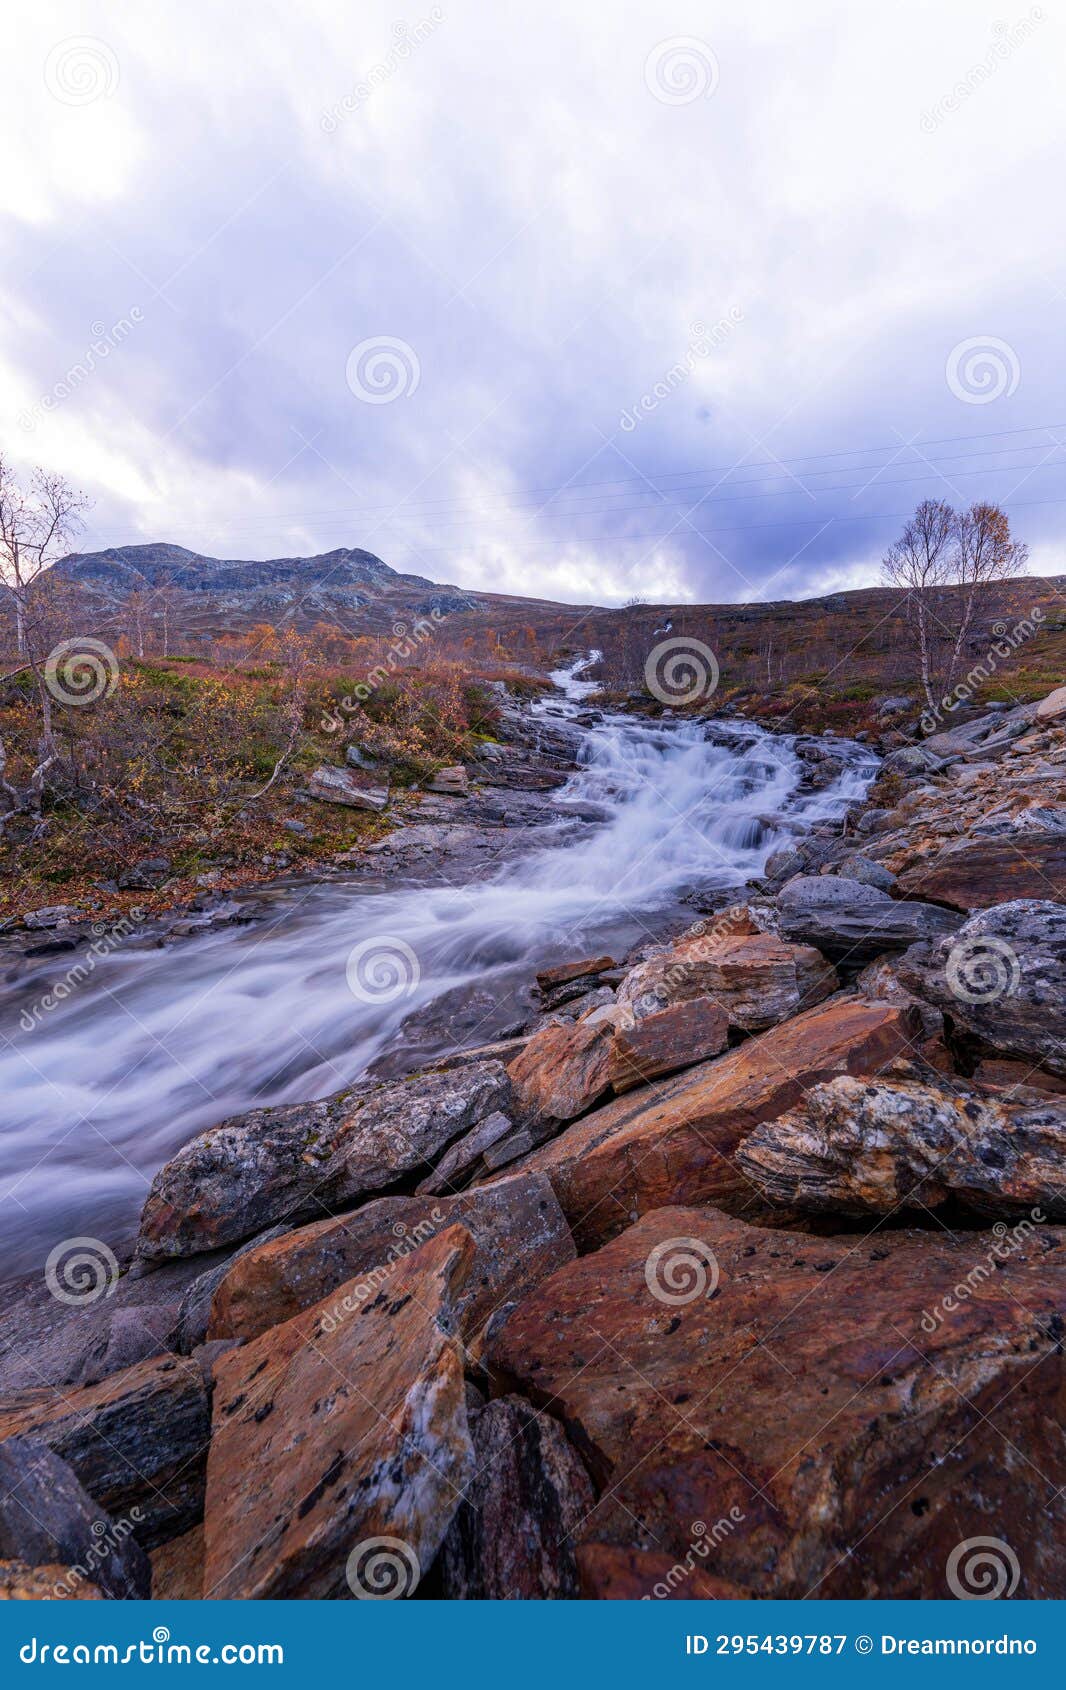 bessa river near besseggen in jotunheim national park in norway